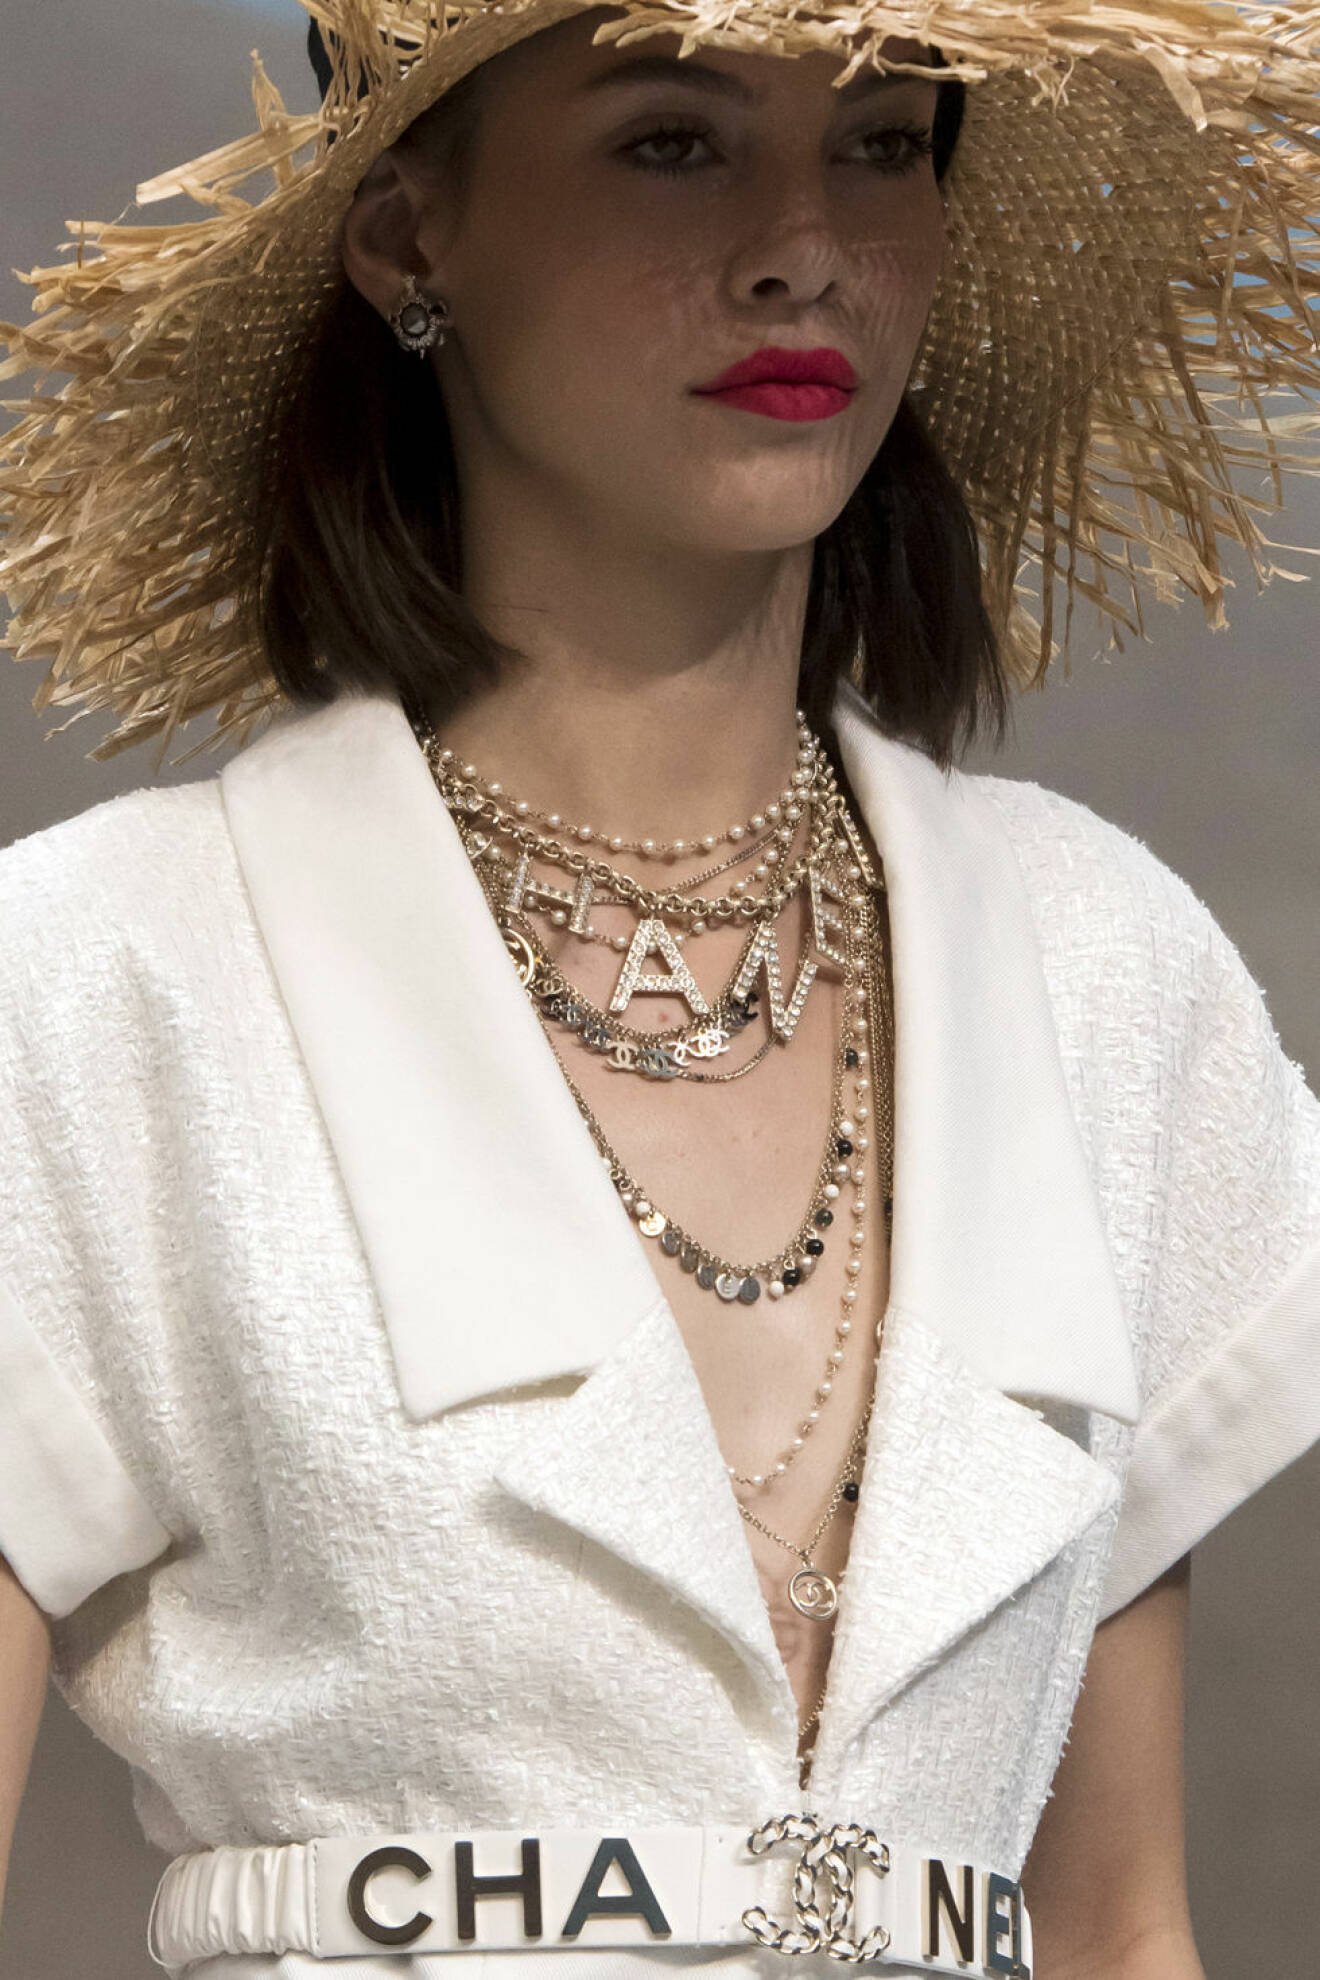 Chanel halsband på modell från ss-19 showen